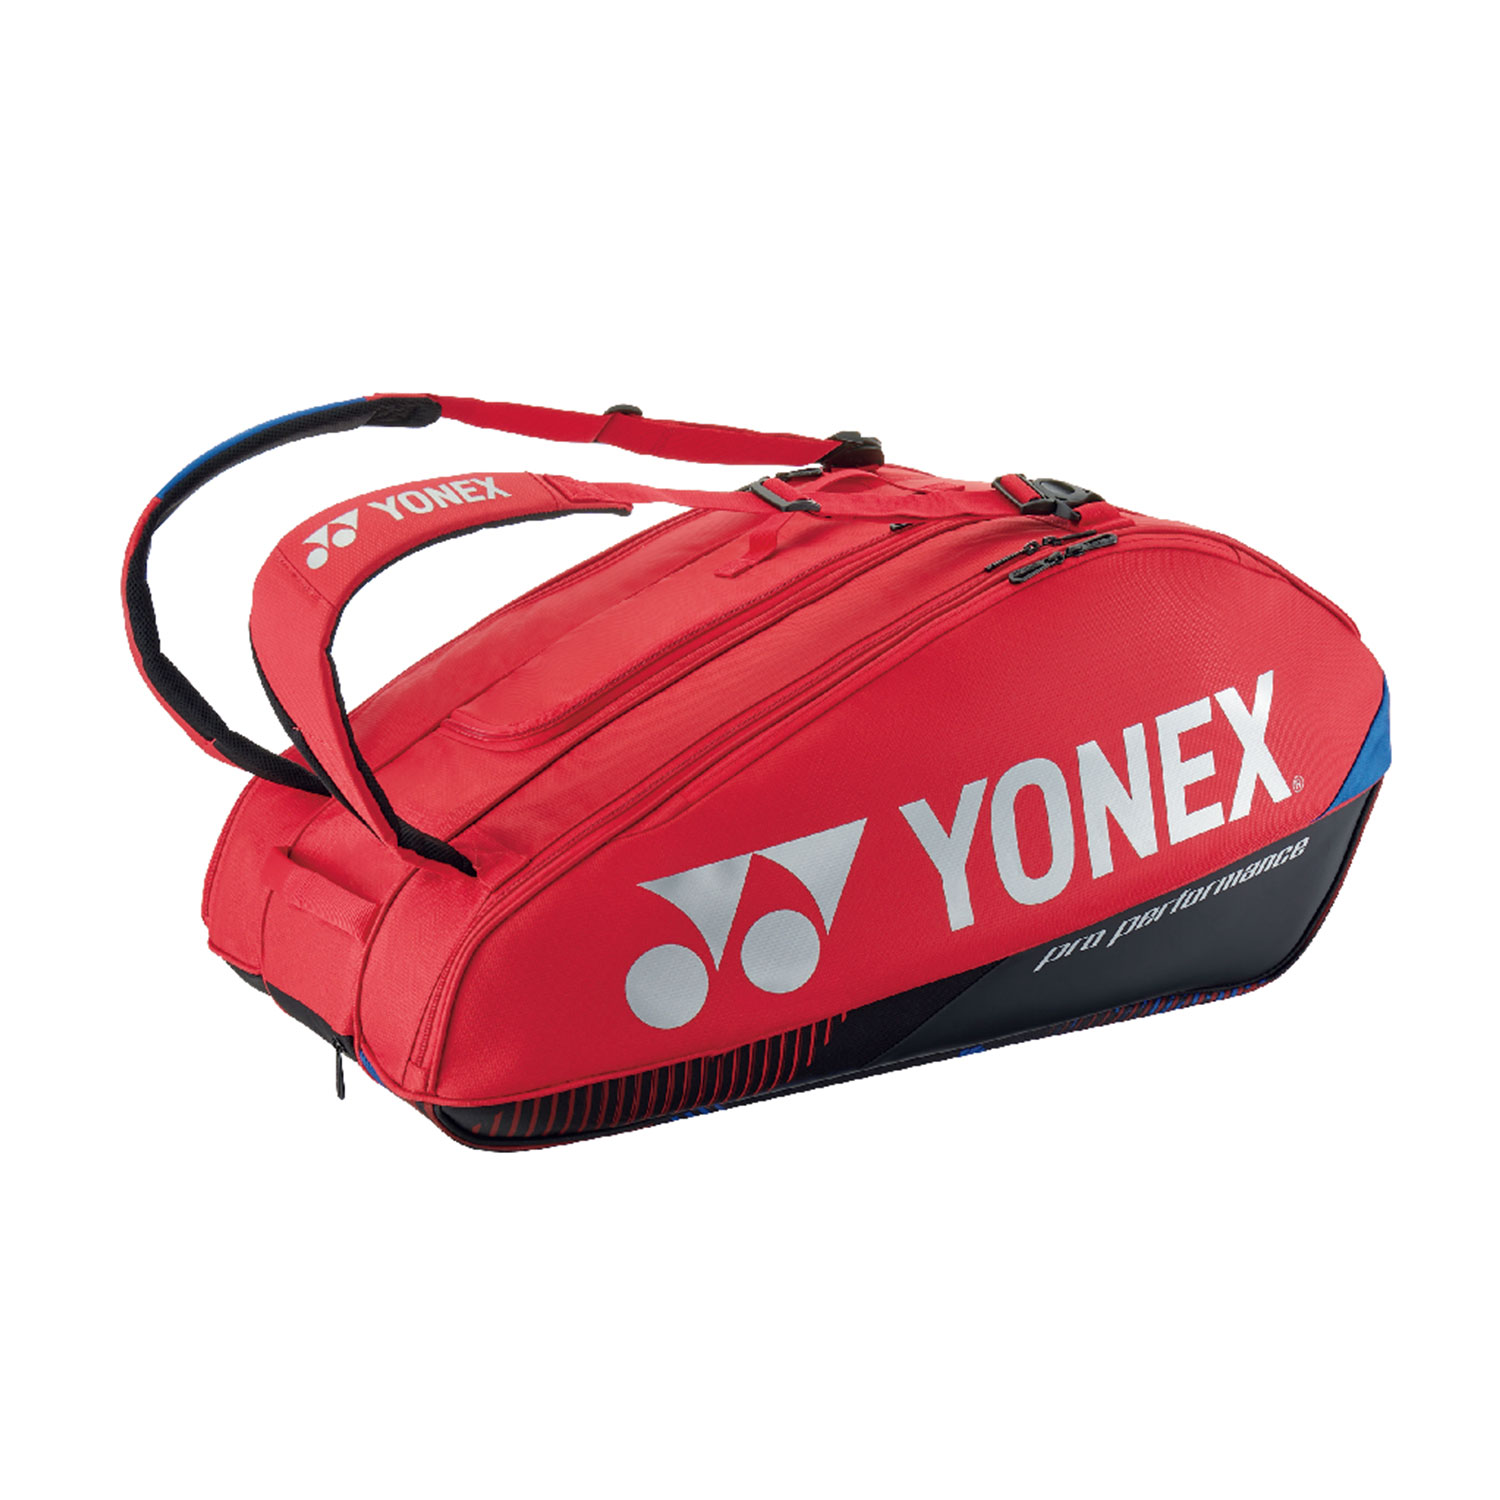 Yonex Bag Pro x 9 Borsa - Scarlet